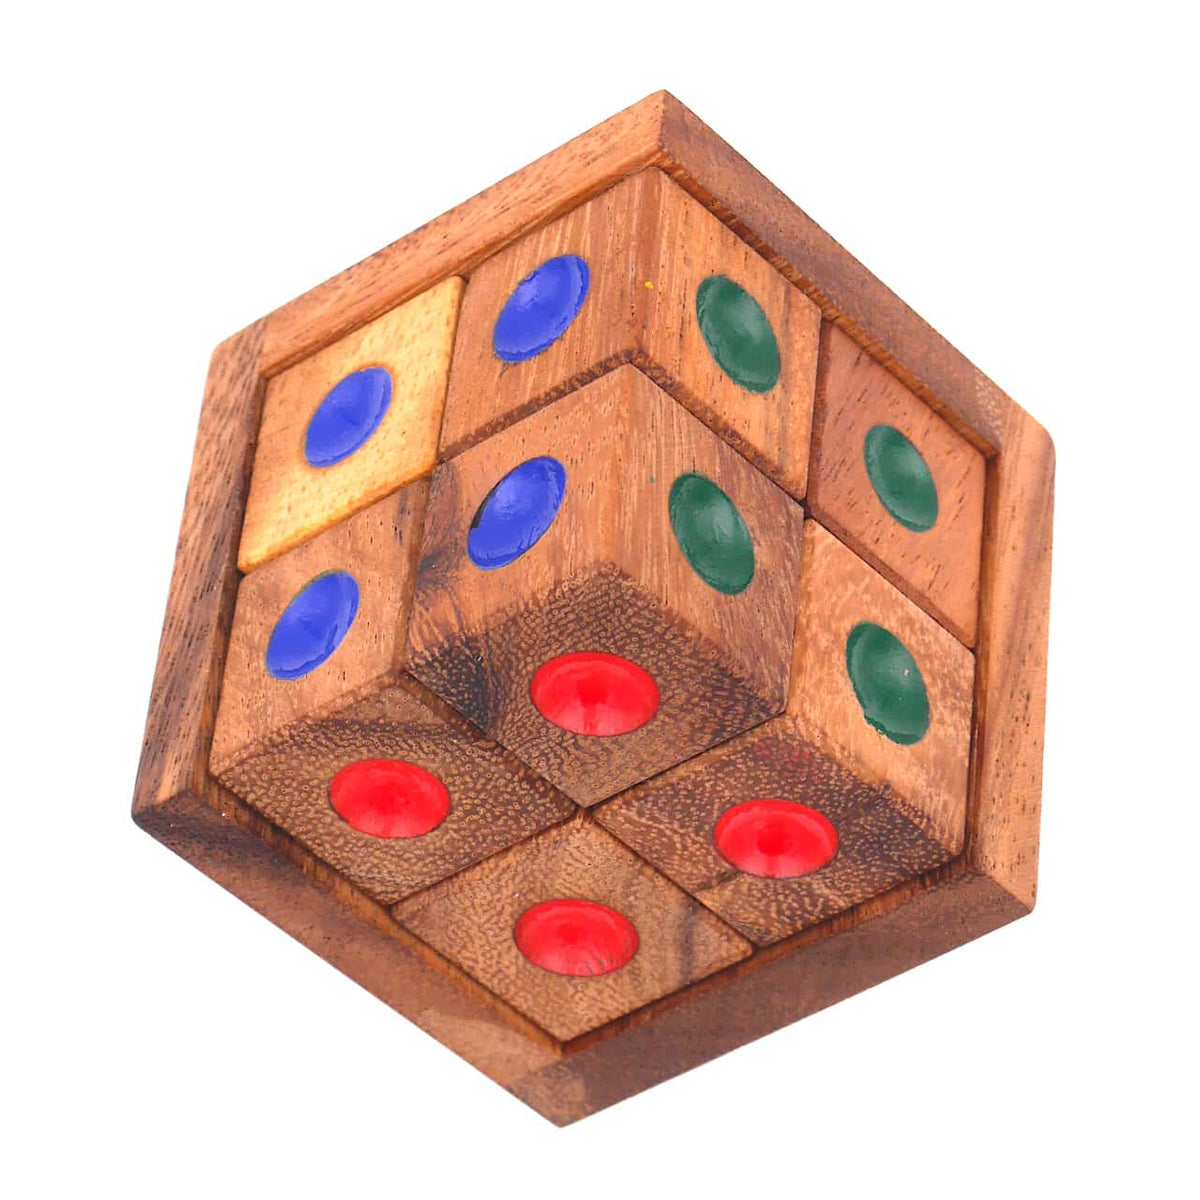 3D-Puzzle mit einer Holzbox und 8 Holzwürfeln mit verschiedenfarbigen Punkten.